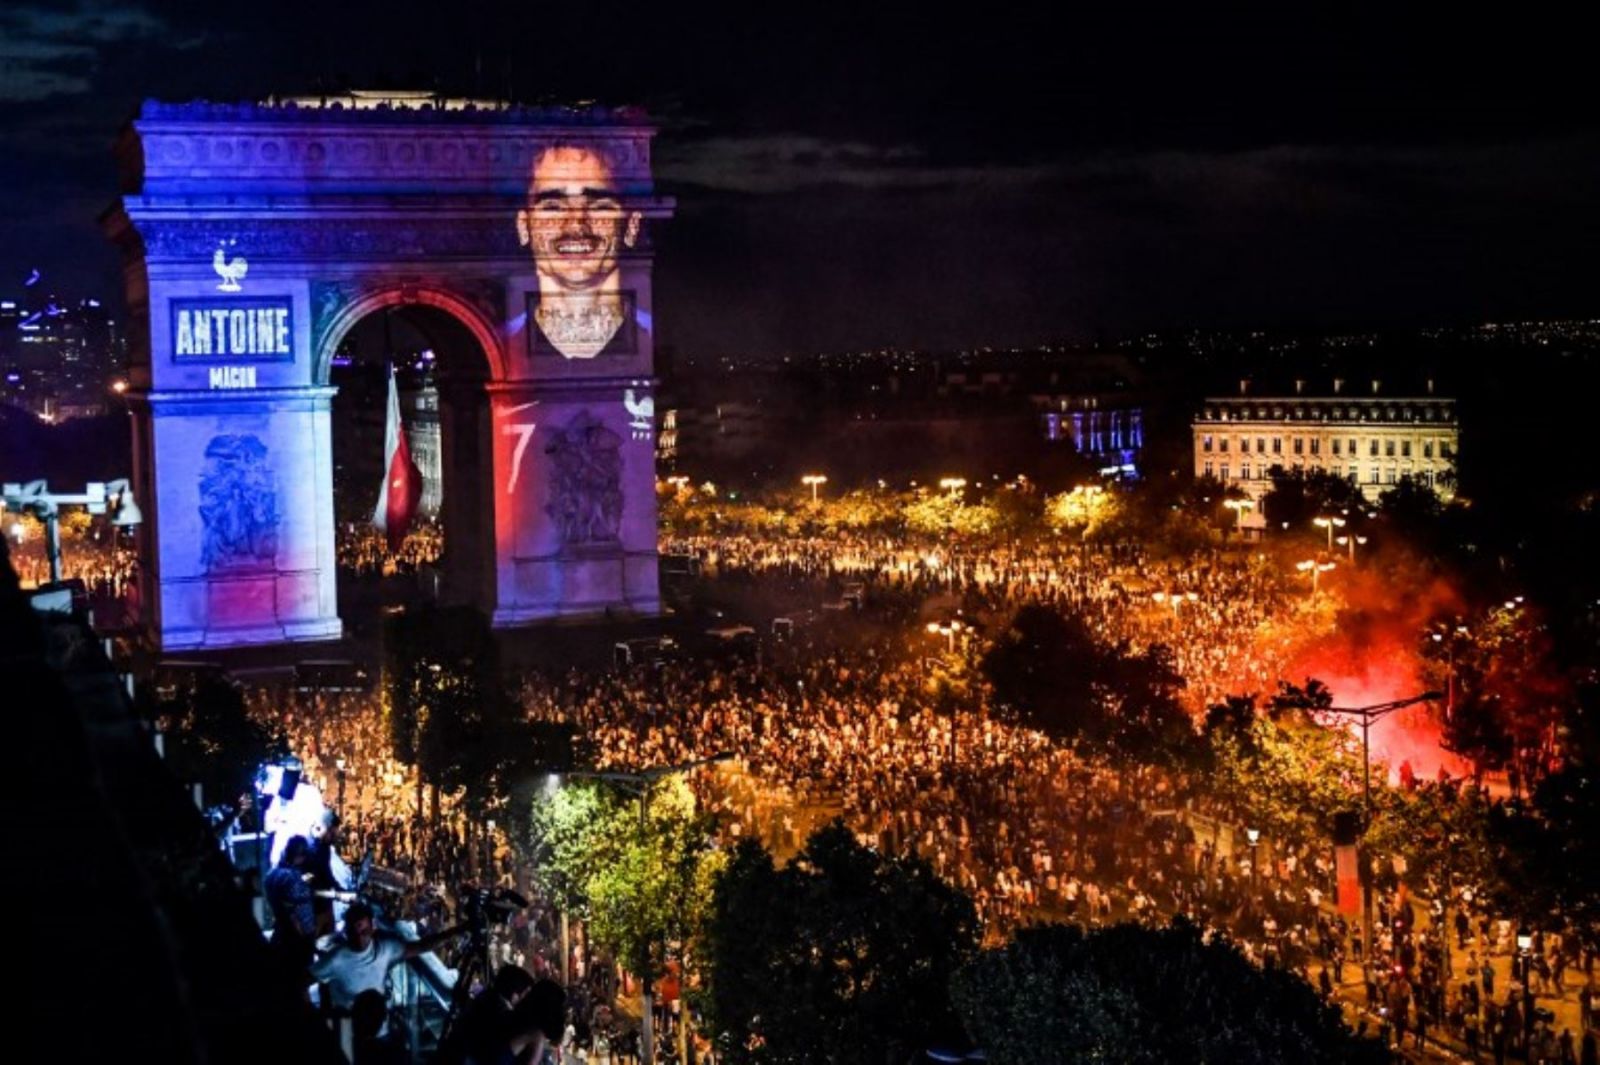 Con estrellas africanas Francia sigue celebrando su gran victoria en el Mundial 